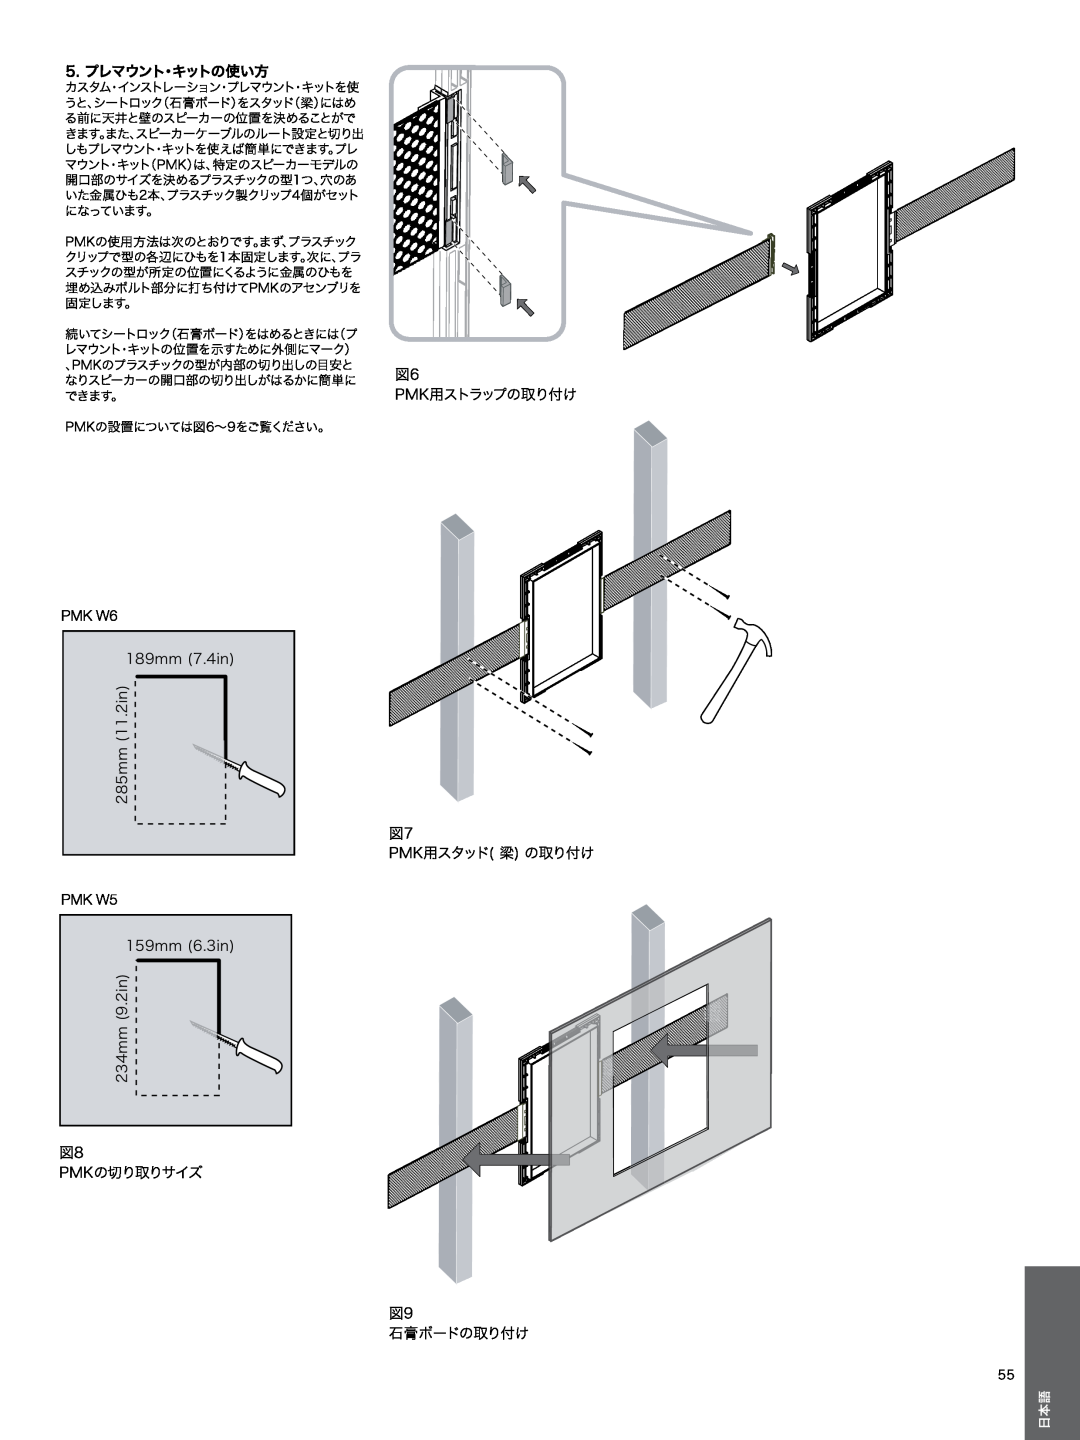 Bowers & Wilkins CWM3 manual 5.プレマウント・キットの使い方, 図6 PMK用ストラップの取り付け, 図8 PMKの切り取りサイズ, 図7 PMK用スタッド 梁 の取り付け, 図9 石膏ボードの取り付け 